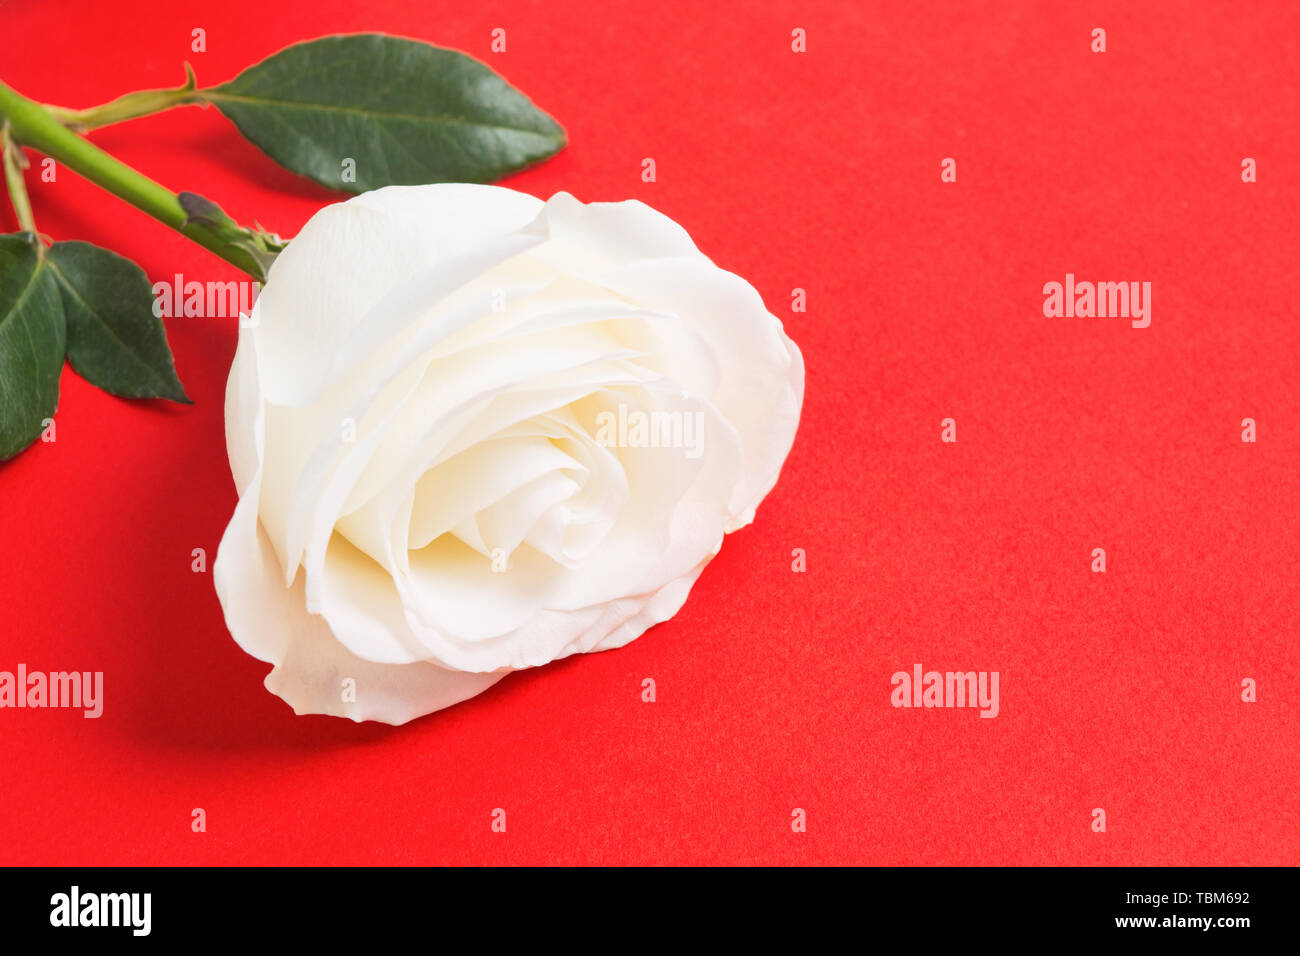 Wunderschöne natürliche Frische weiße Rose auf der Roten strukturierten Hintergrund mit kopieren. Geschenk für den Valentinstag oder Woman's Day Stockfoto